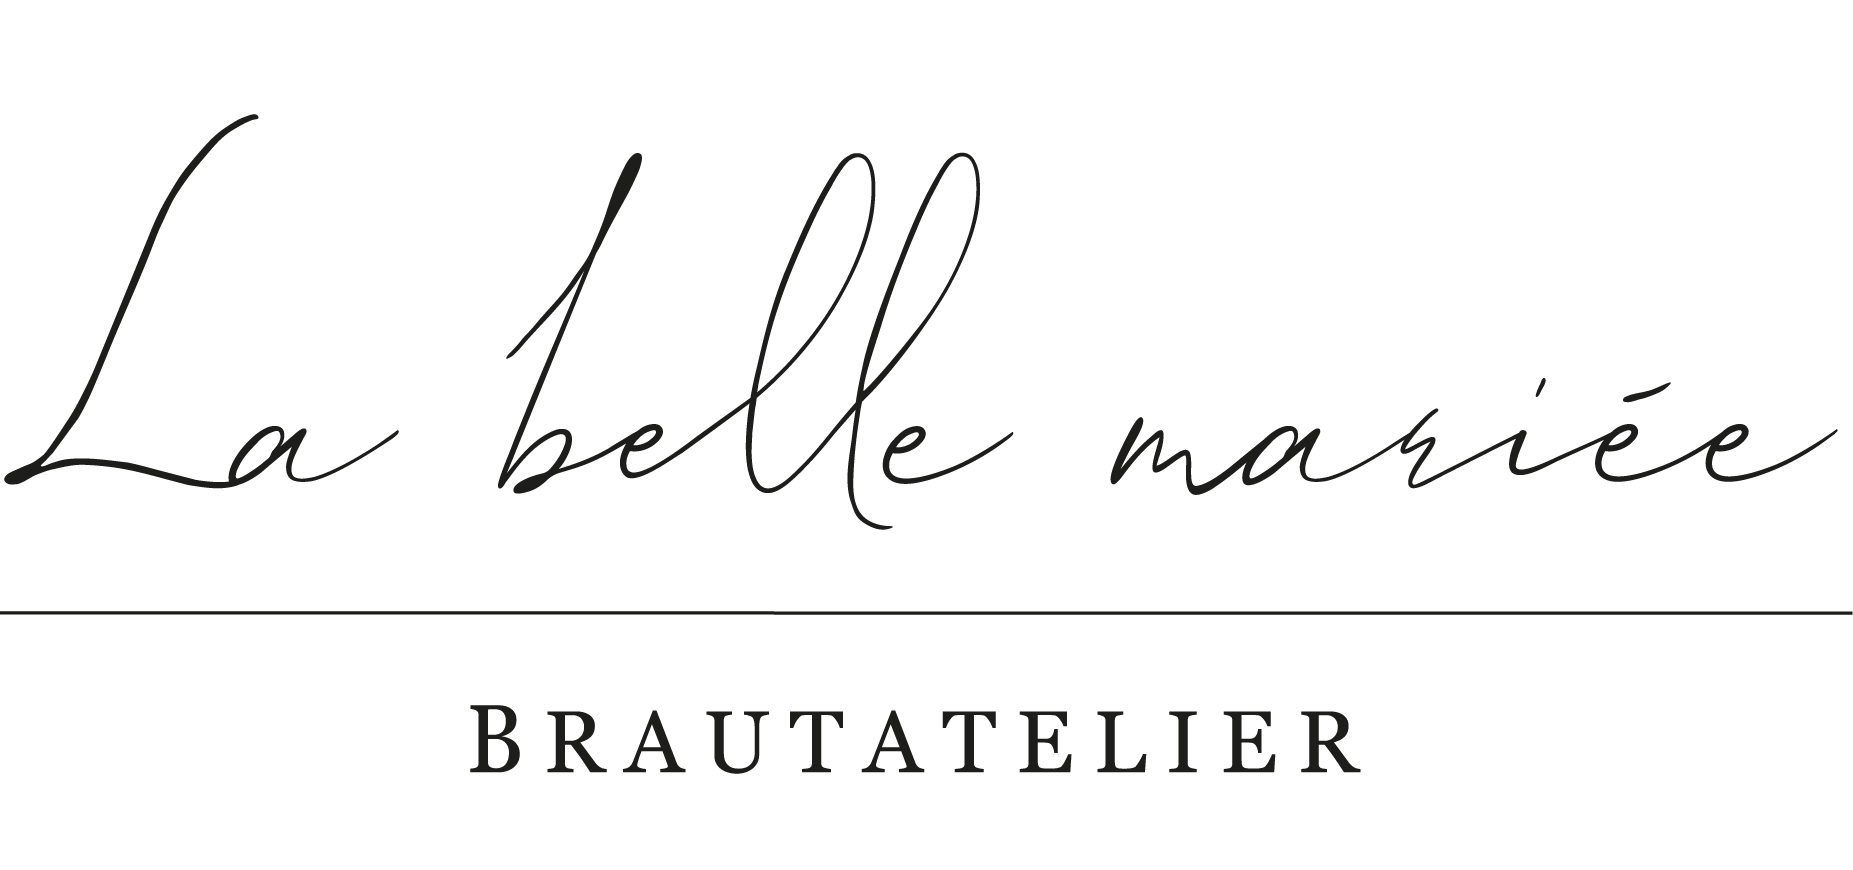 La belle mariée - Brautatelier